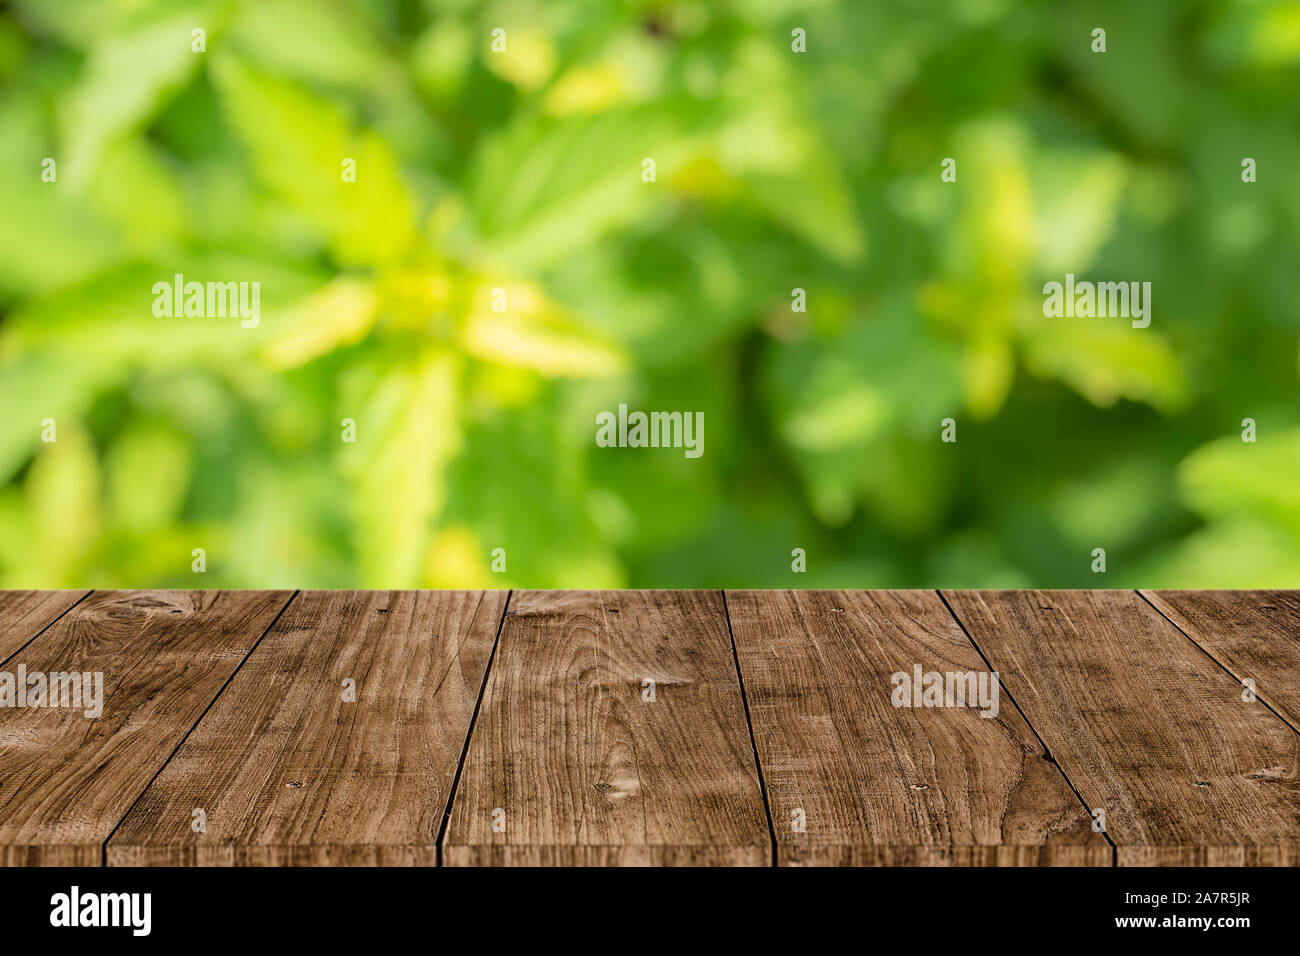 Grüne Natur Weichzeichner mit hölzernen Tisch Hintergrund für natürliche Produkte montage Vorlage Stockfoto